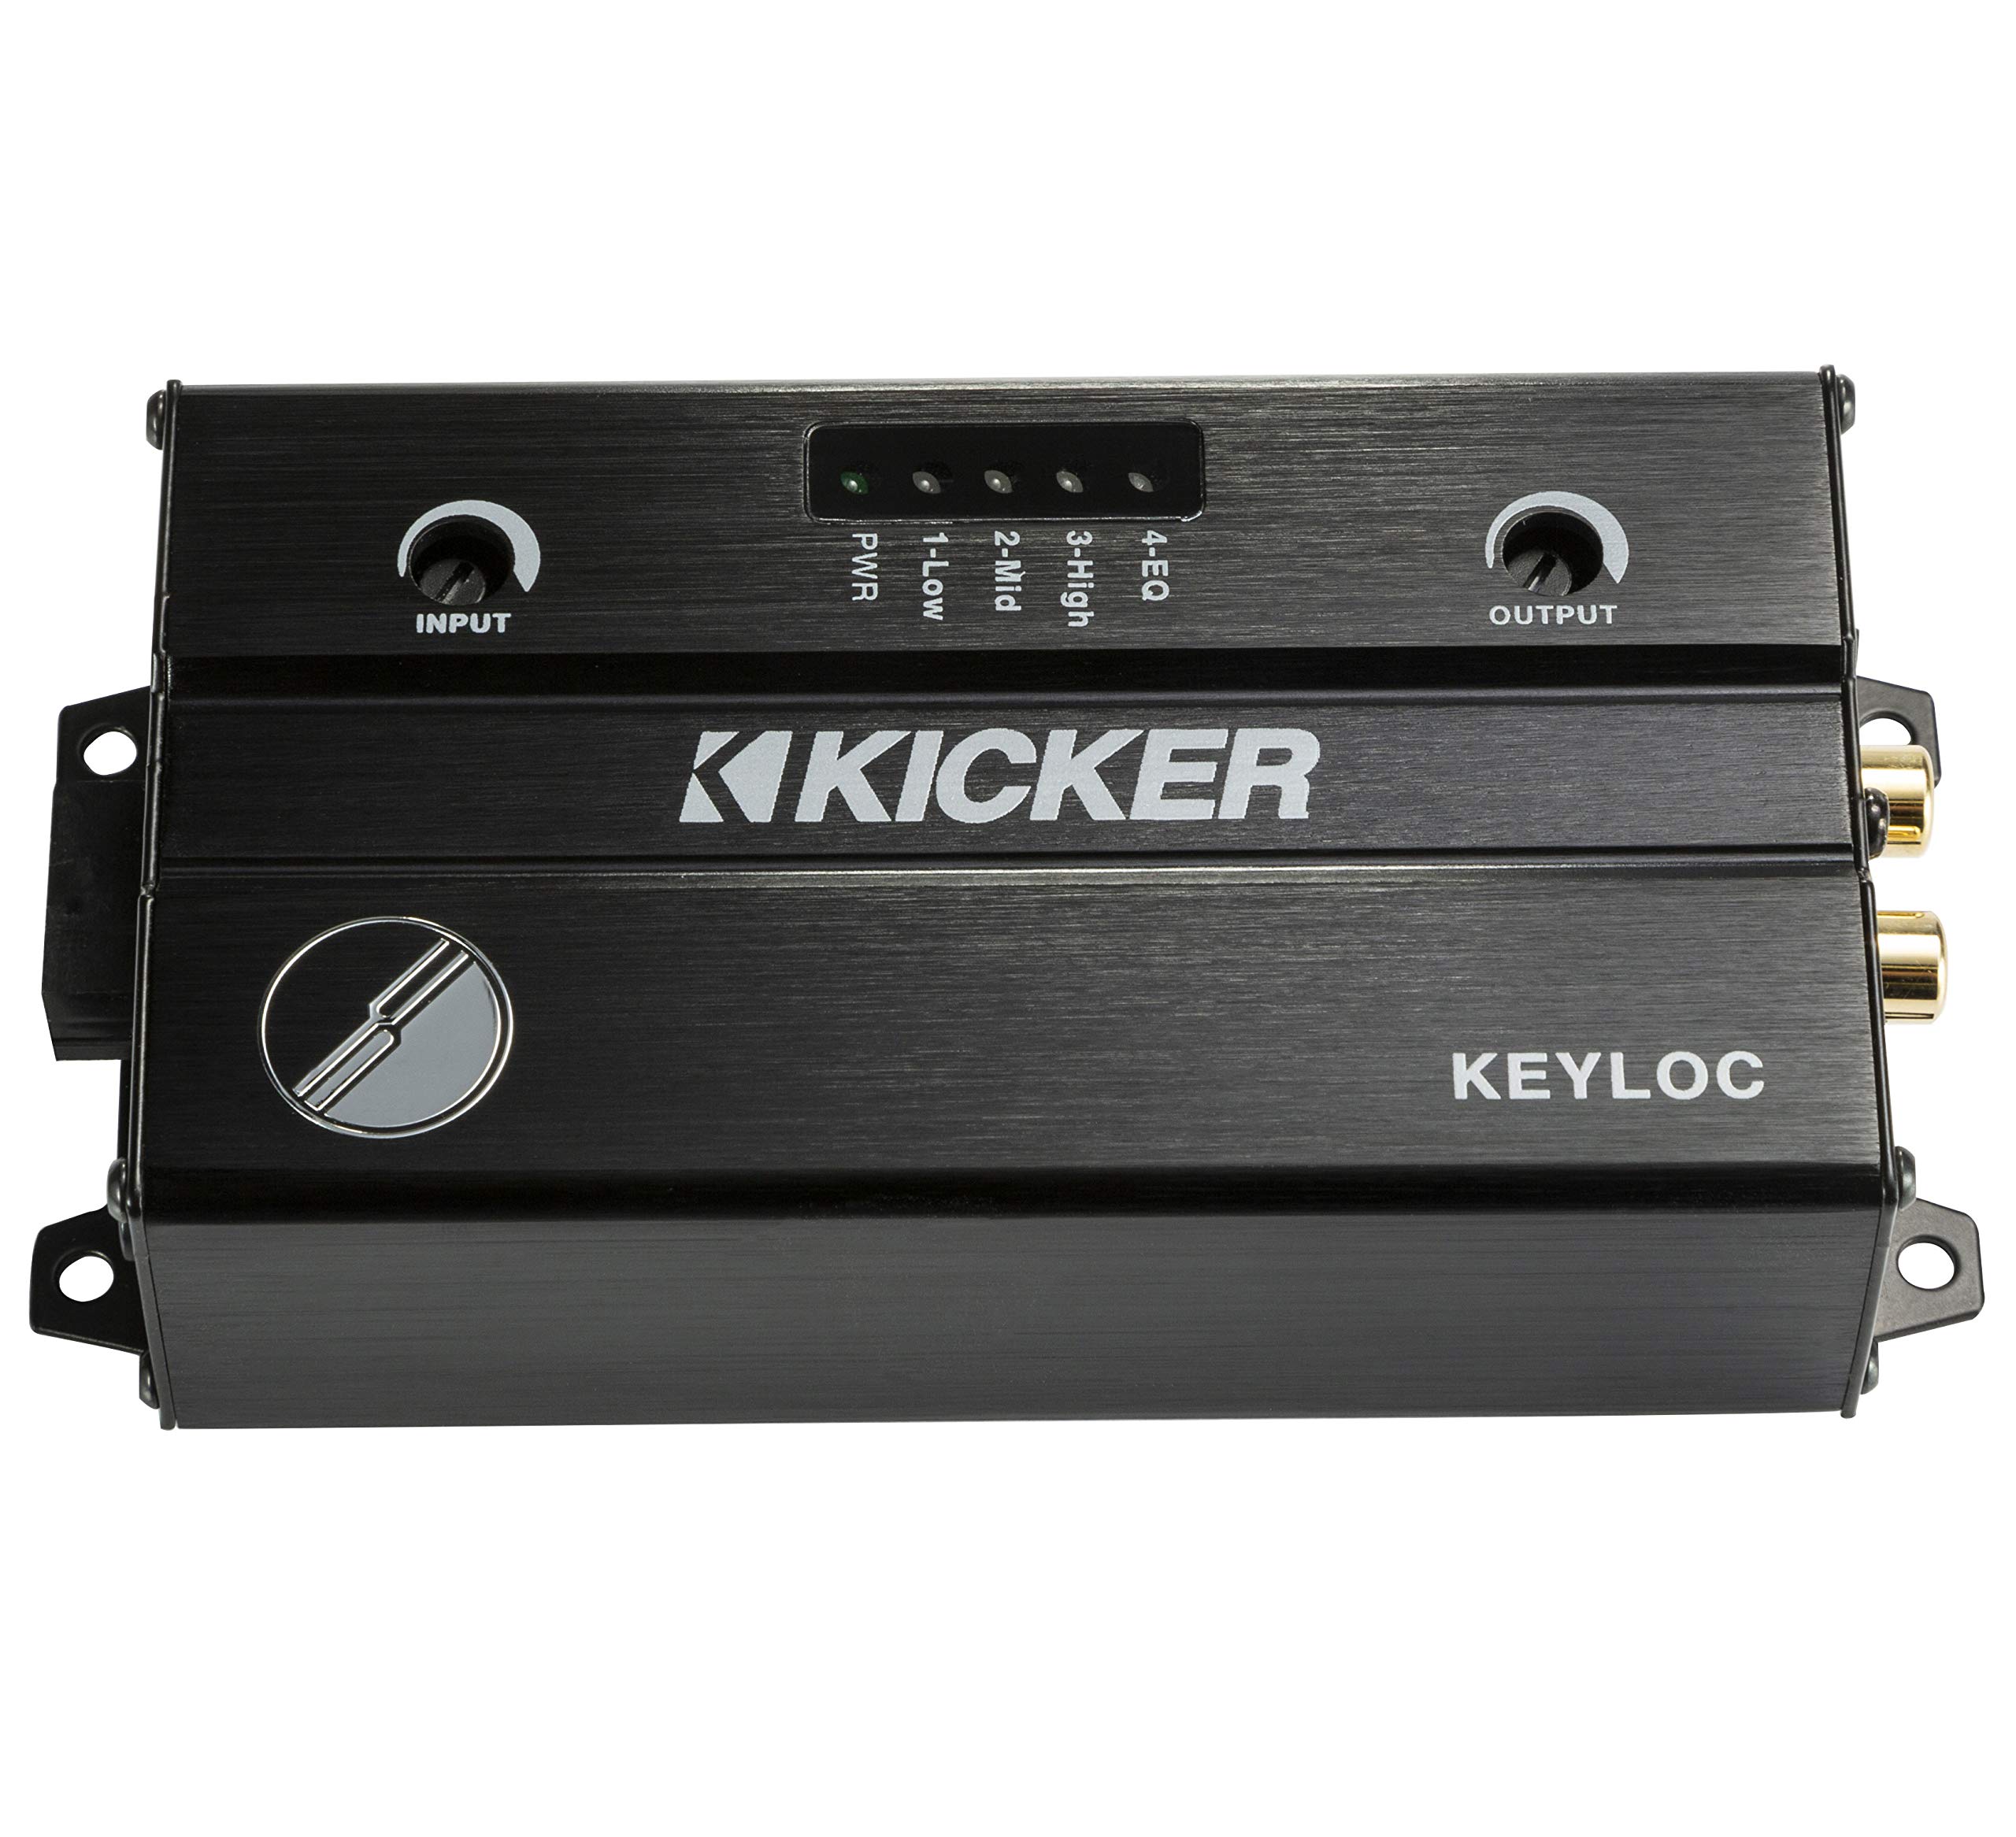 Kicker 47KEYLOC 스마트 2 채널 라인 출력 컨버터 간편한 공장 라디오 설정